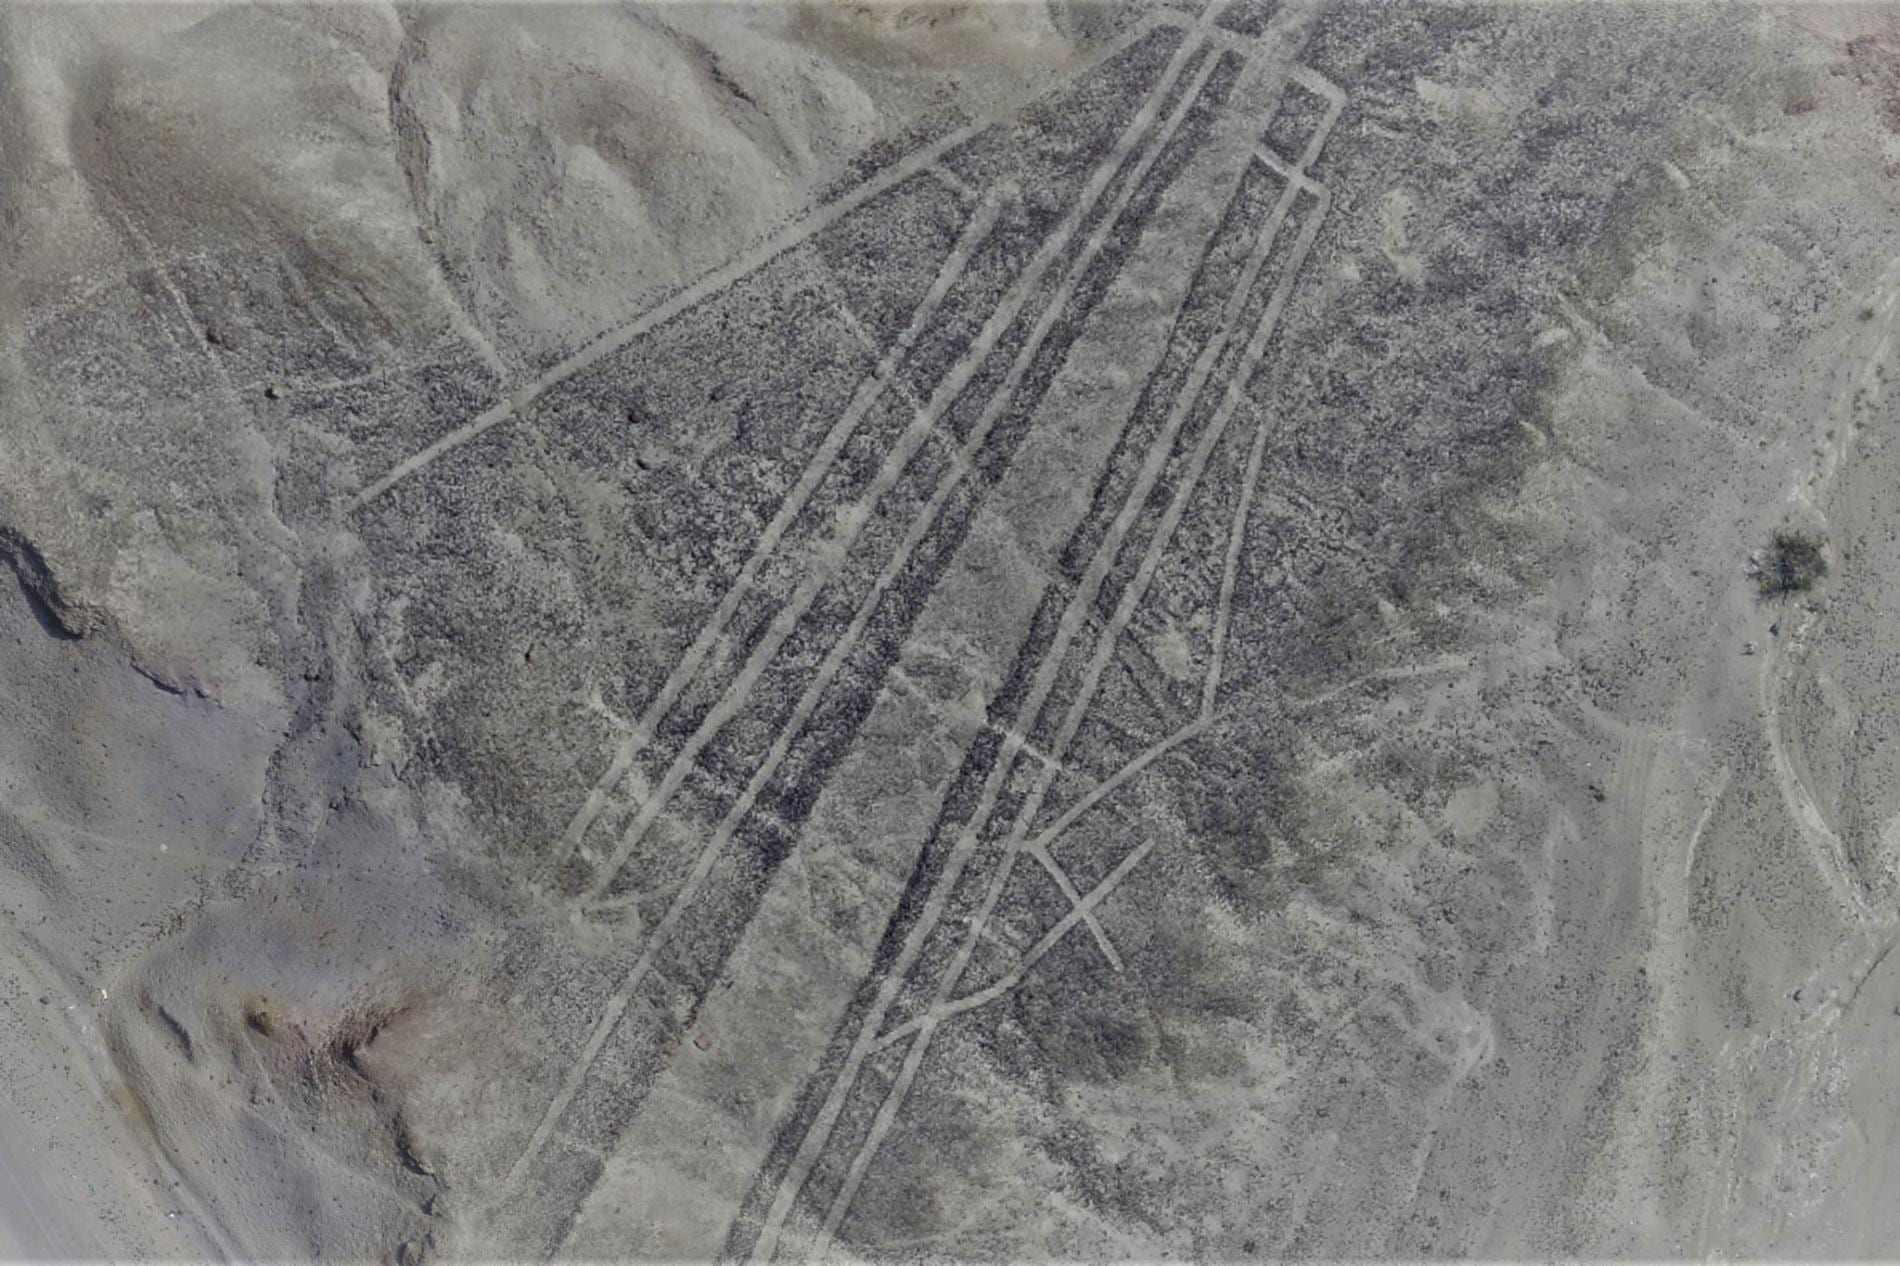 Palpa Lines: Sú tieto záhadné geoglyfy o 1,000 2 rokov staršie ako línie Nazca? XNUMX